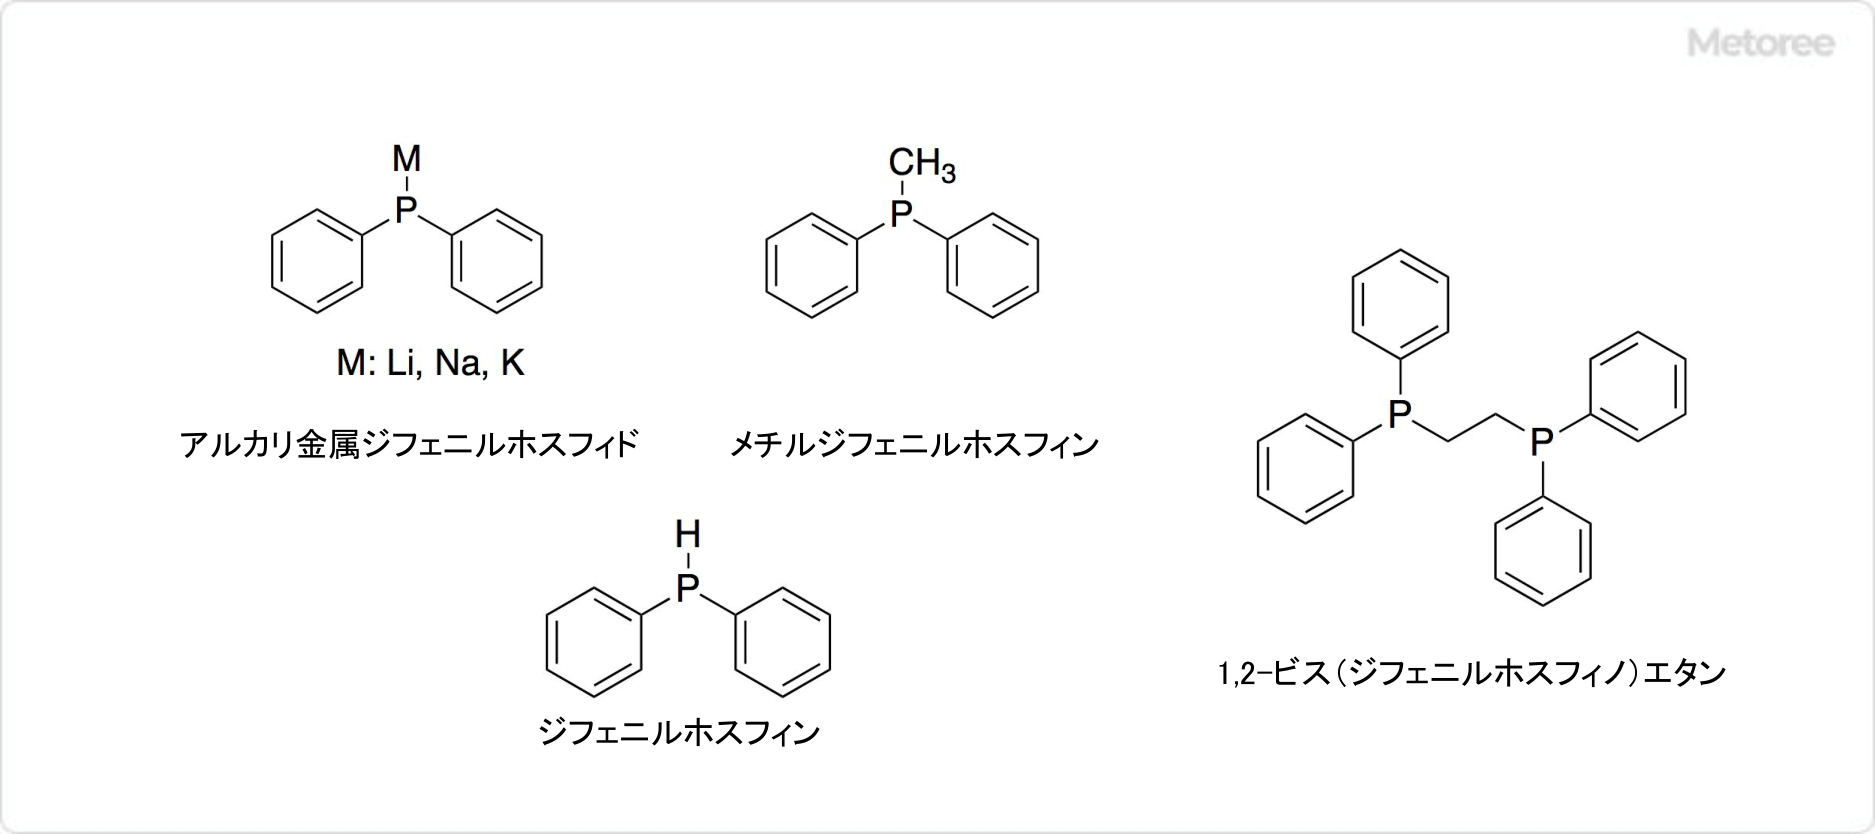 トリフェニルホスフィンの関連化合物